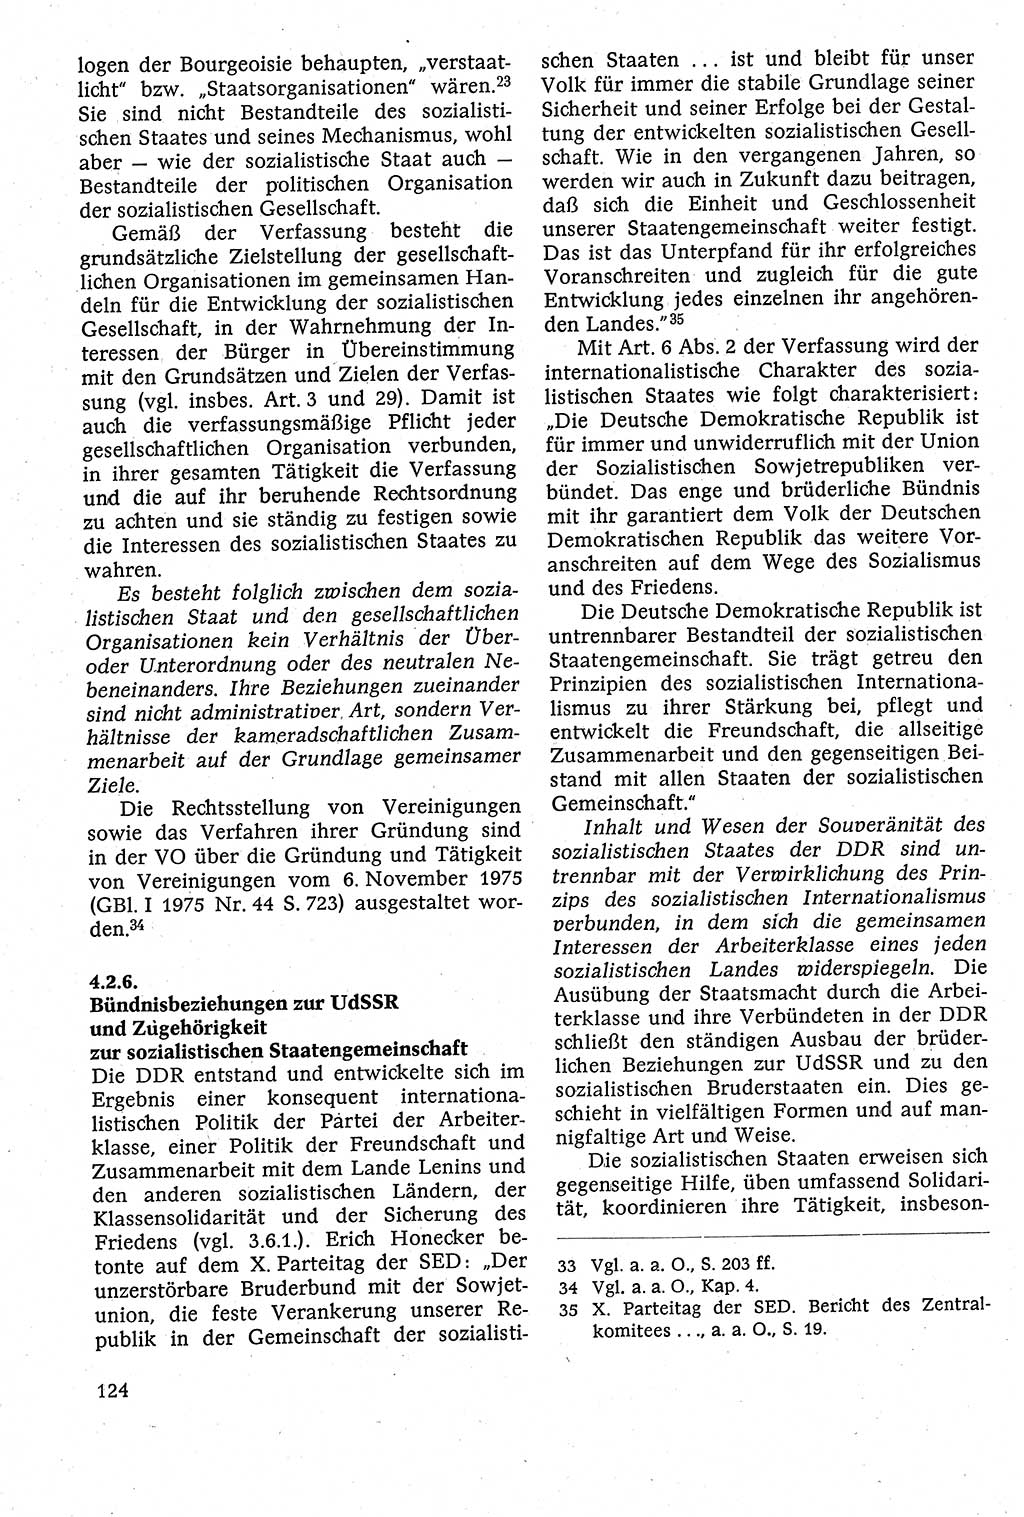 Staatsrecht der DDR [Deutsche Demokratische Republik (DDR)], Lehrbuch 1984, Seite 124 (St.-R. DDR Lb. 1984, S. 124)